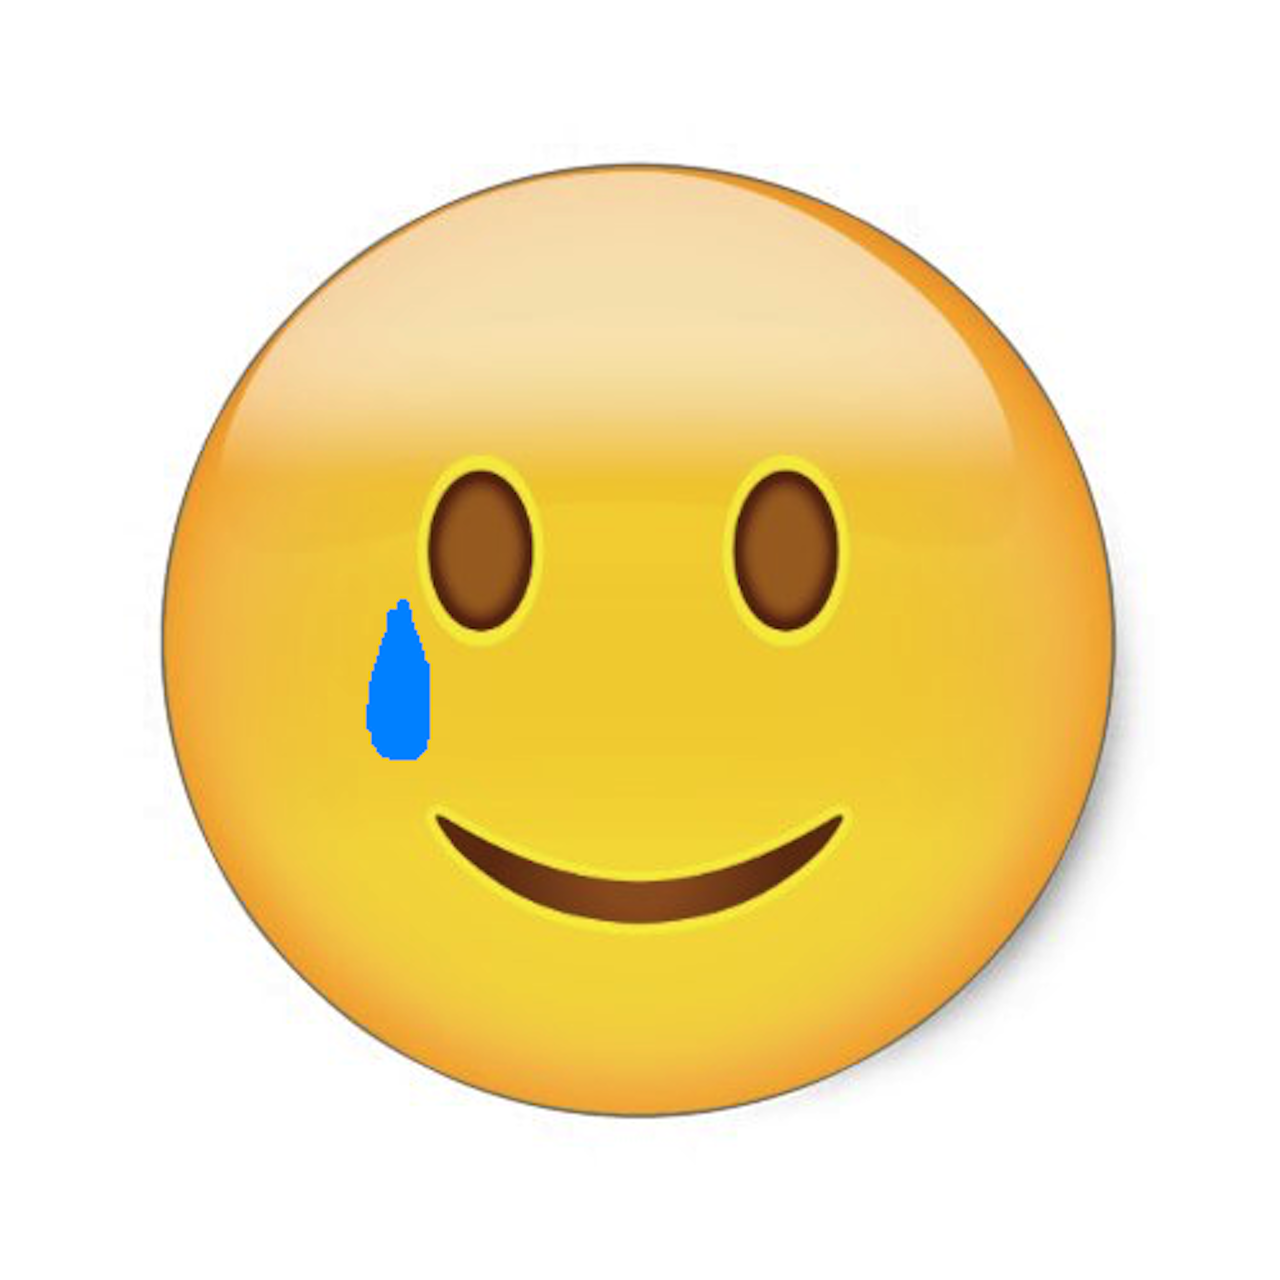 Sadness and weaping emoji